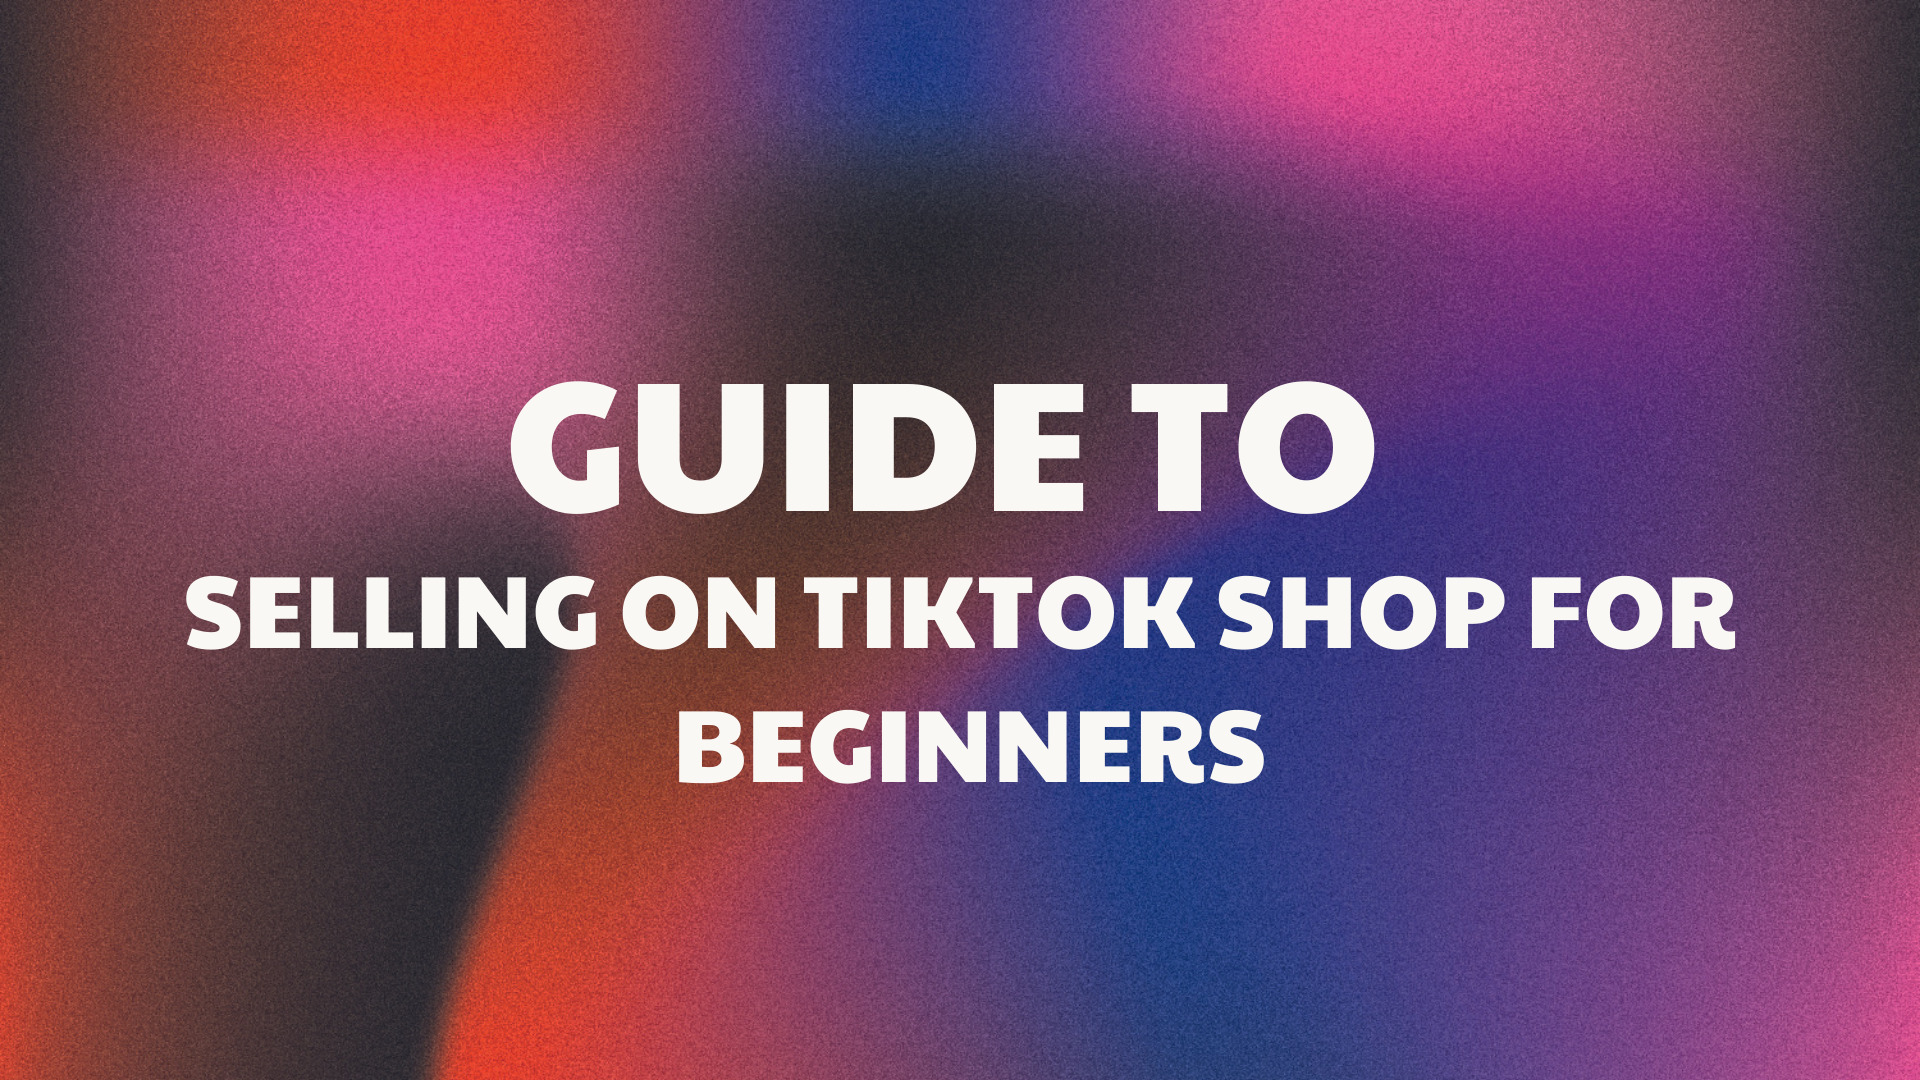 How to Use TikTok - 2023 Beginners Tutorial 